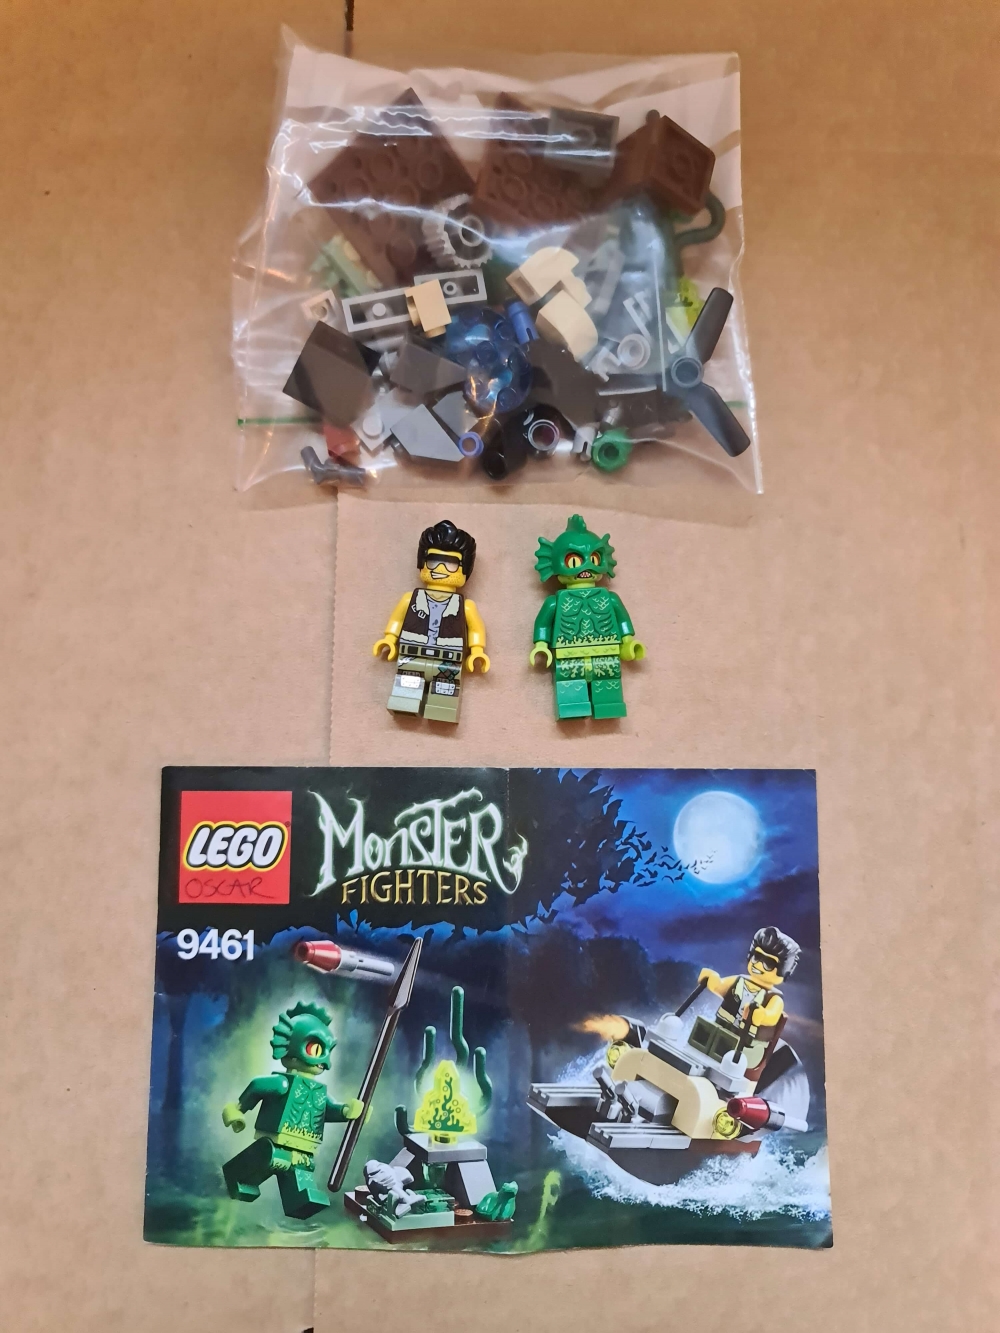 Sett 9461 fra Lego Monster Fighters serien.
Flott sett. Komplett med manual.